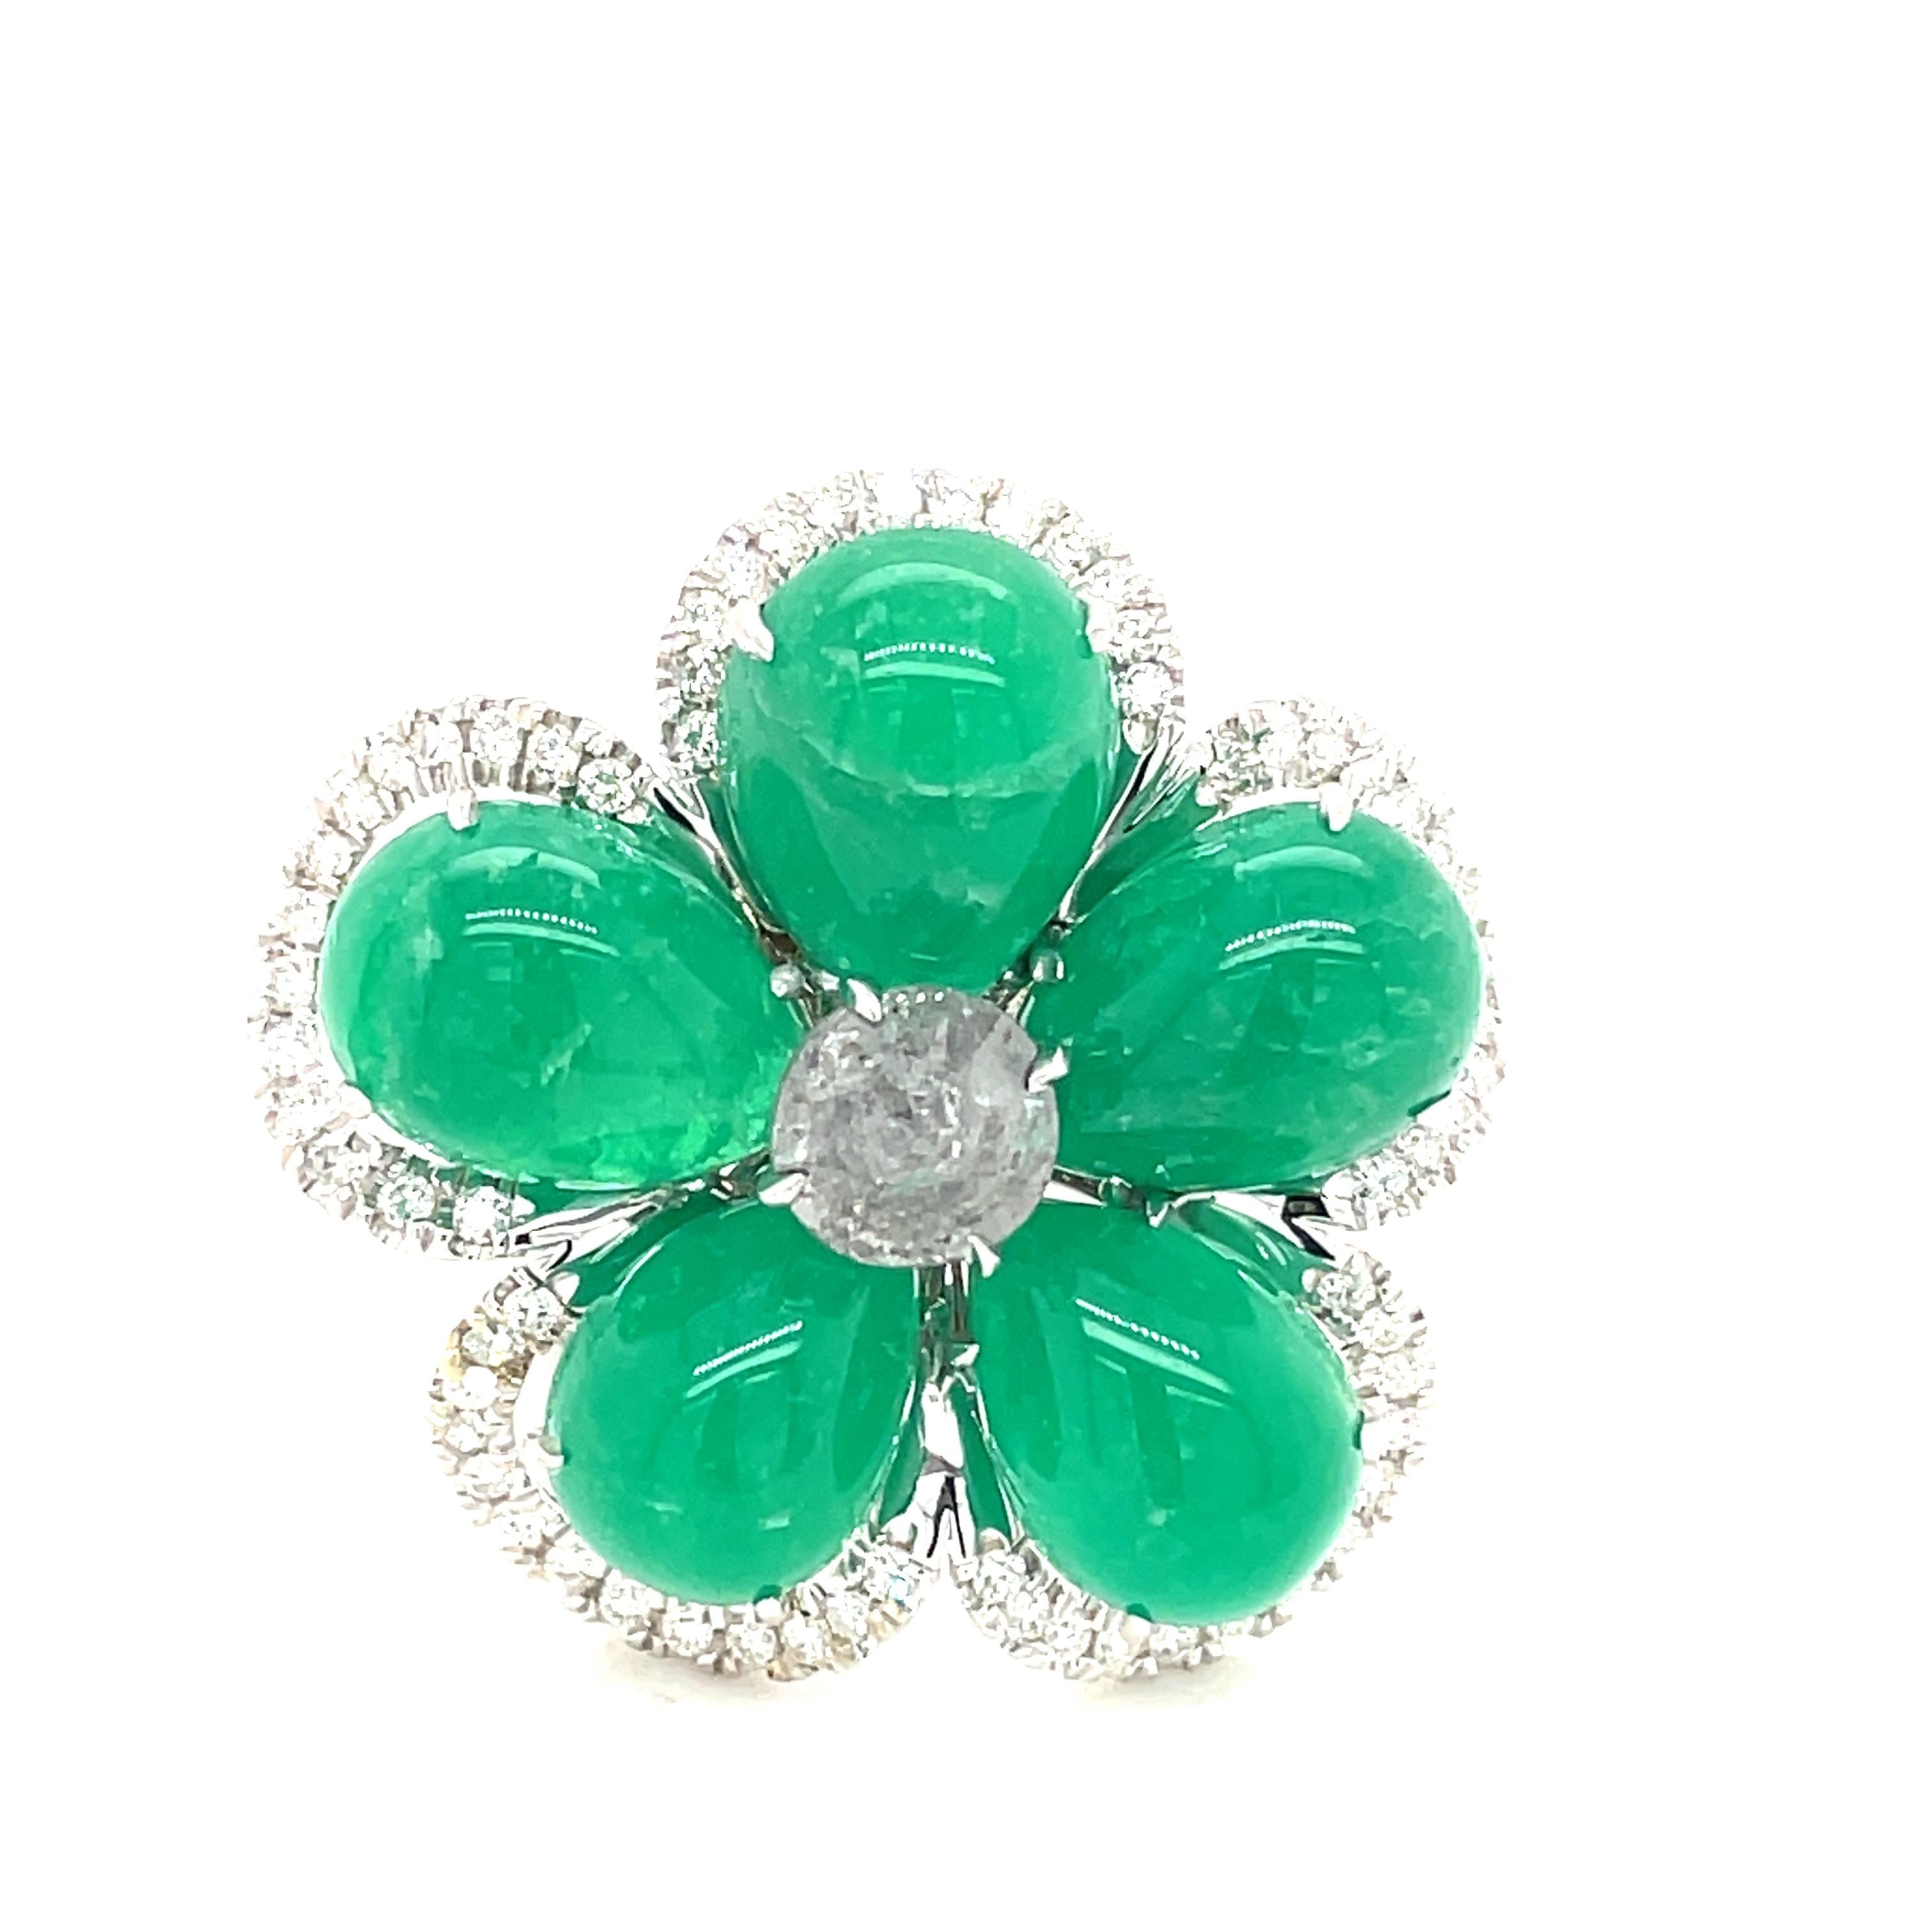 Wunderschöner Ring aus Smaragd, Diamant und Weißgold.  Die Smaragd-Cabochons der New Yorkerin Nina Runsdorf sind bekannt für ihre tragbaren, einzigartigen Schmuckstücke aus Edel- und Halbedelsteinen.
Gestempelt 18K und NR.
1 Zoll Breite an der